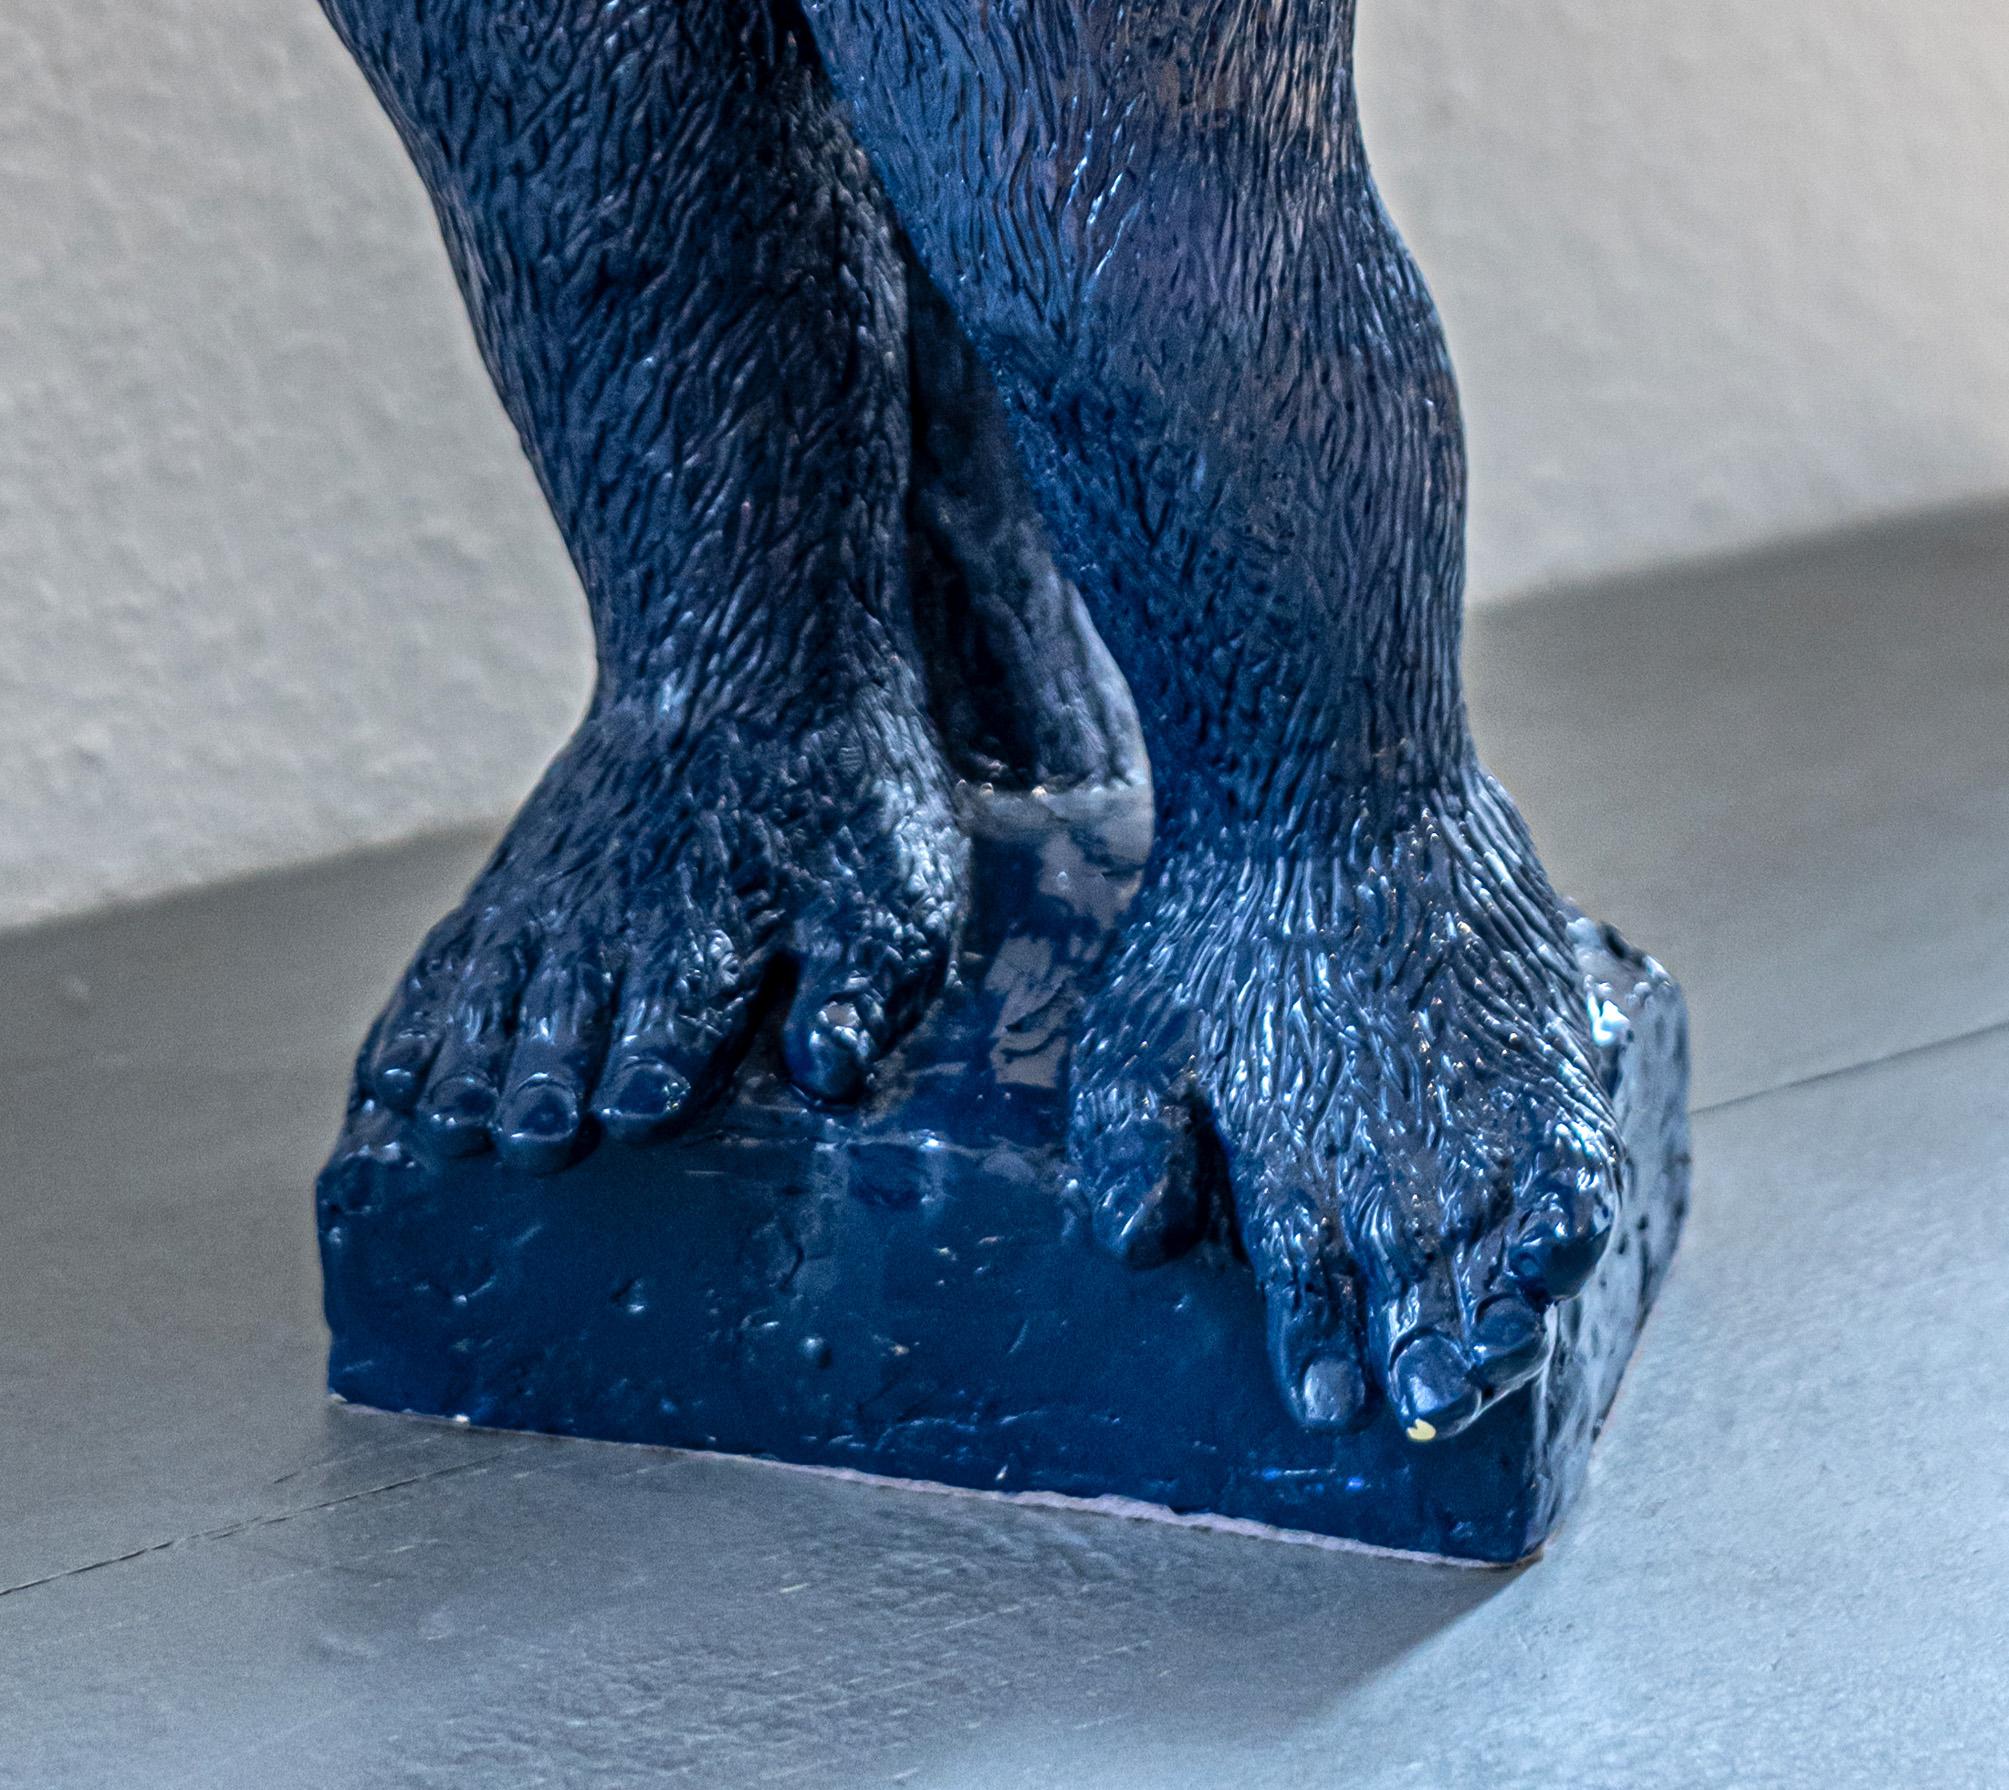 Soon ist eine Harzskulptur von Patrick Schumacher, einem französischen zeitgenössischen Künstler. Diese Skulptur stellt einen Gorilla in der Haltung der Renaissance-Skulptur 